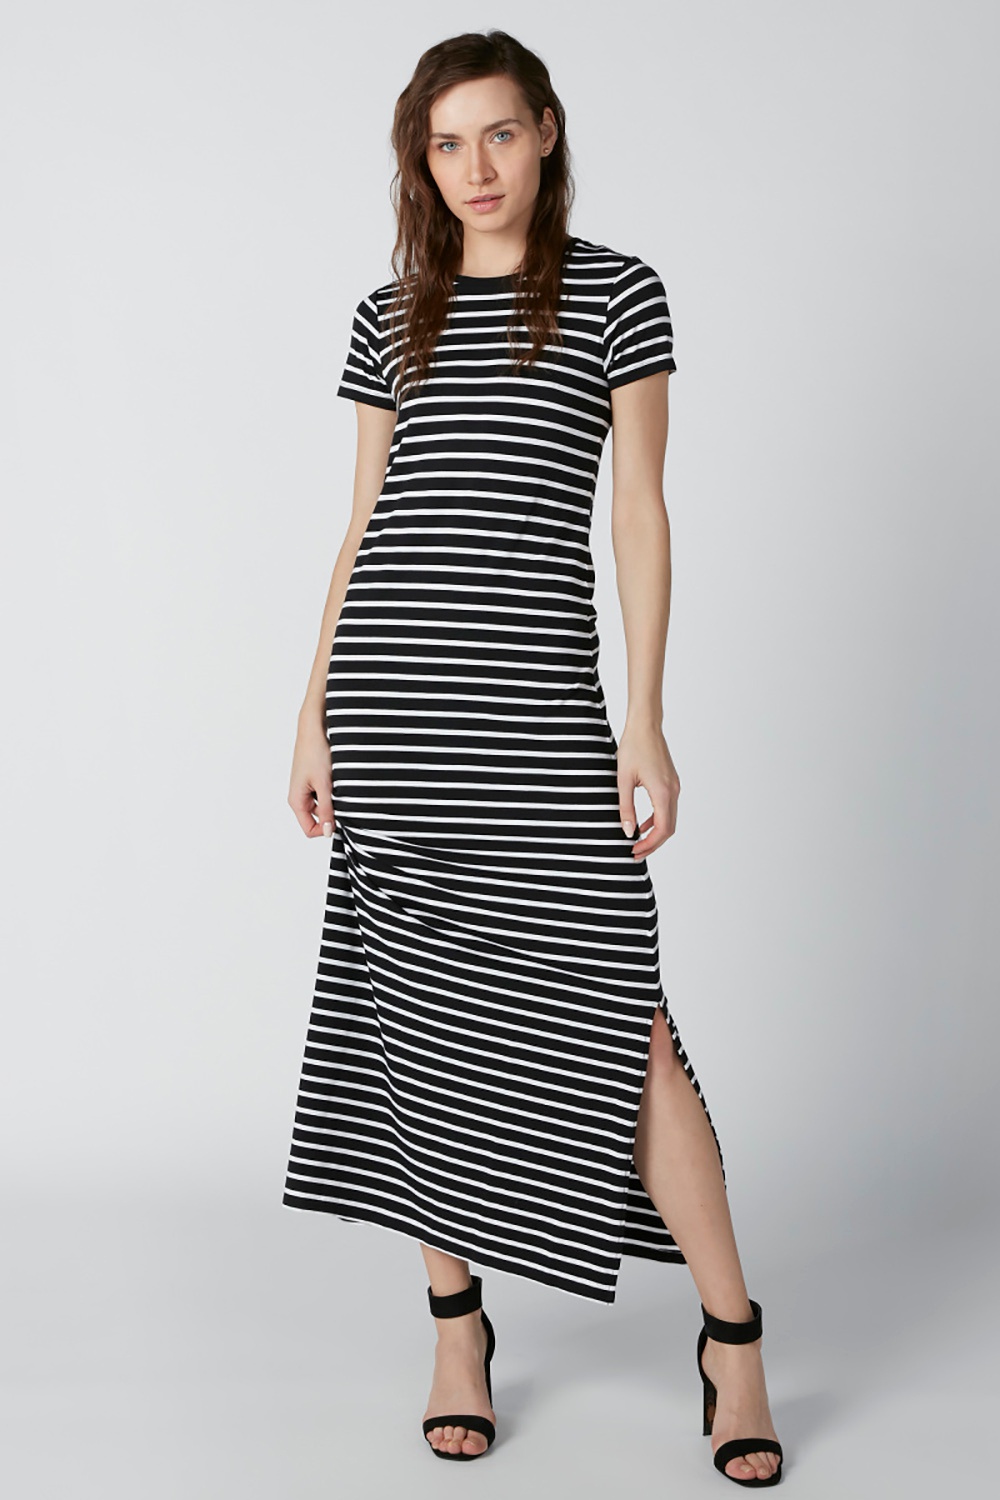 Splash Striped Dress Full length | Odel.lk